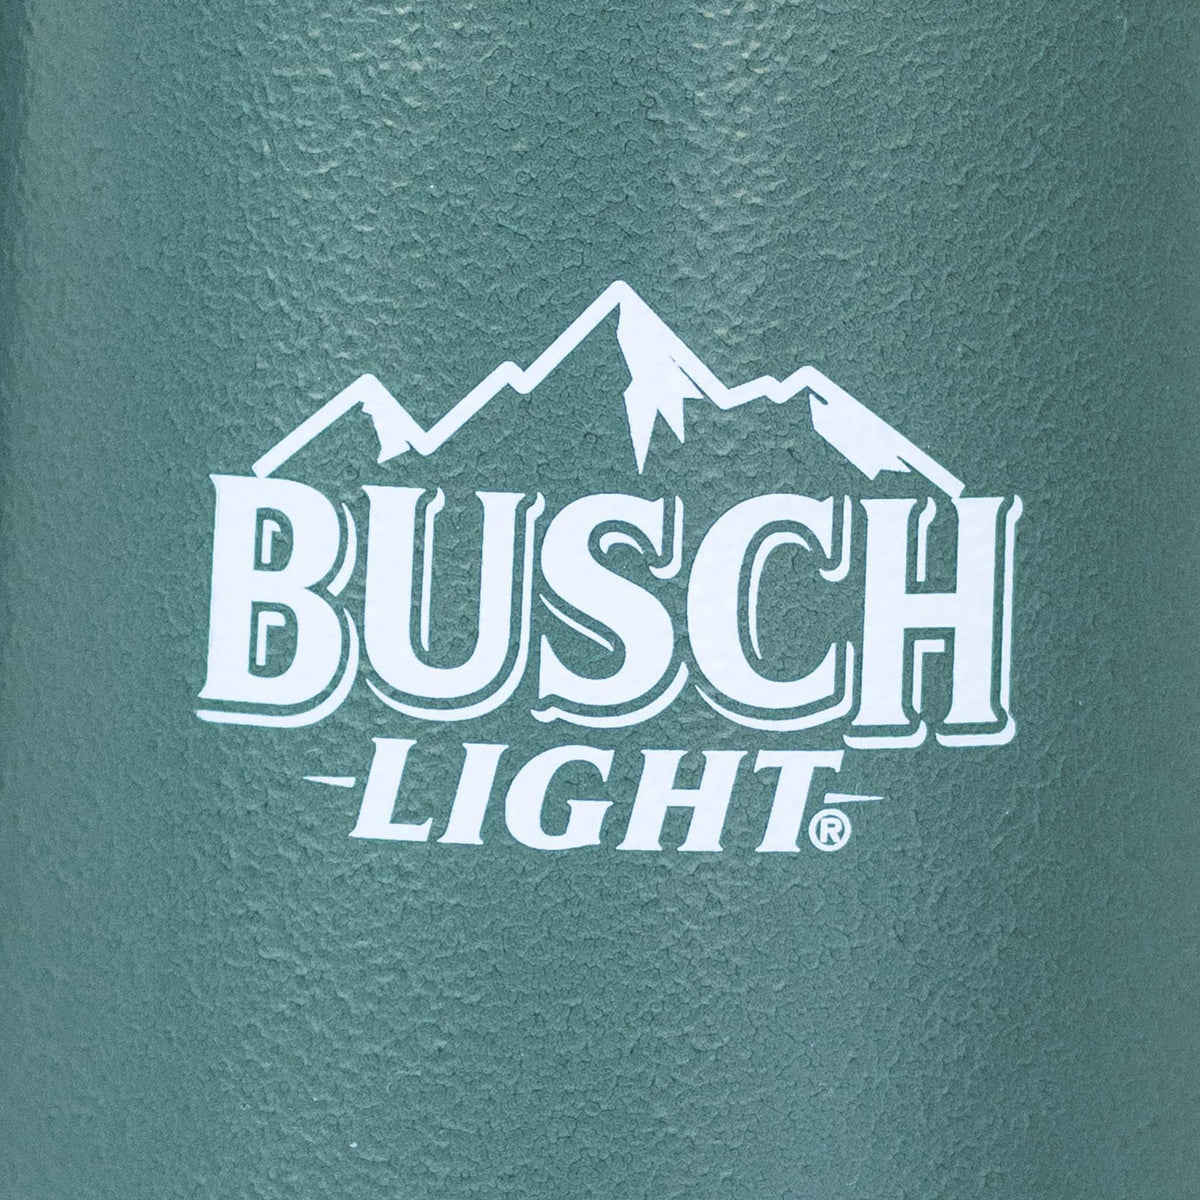 Busch Light Stanley Stein